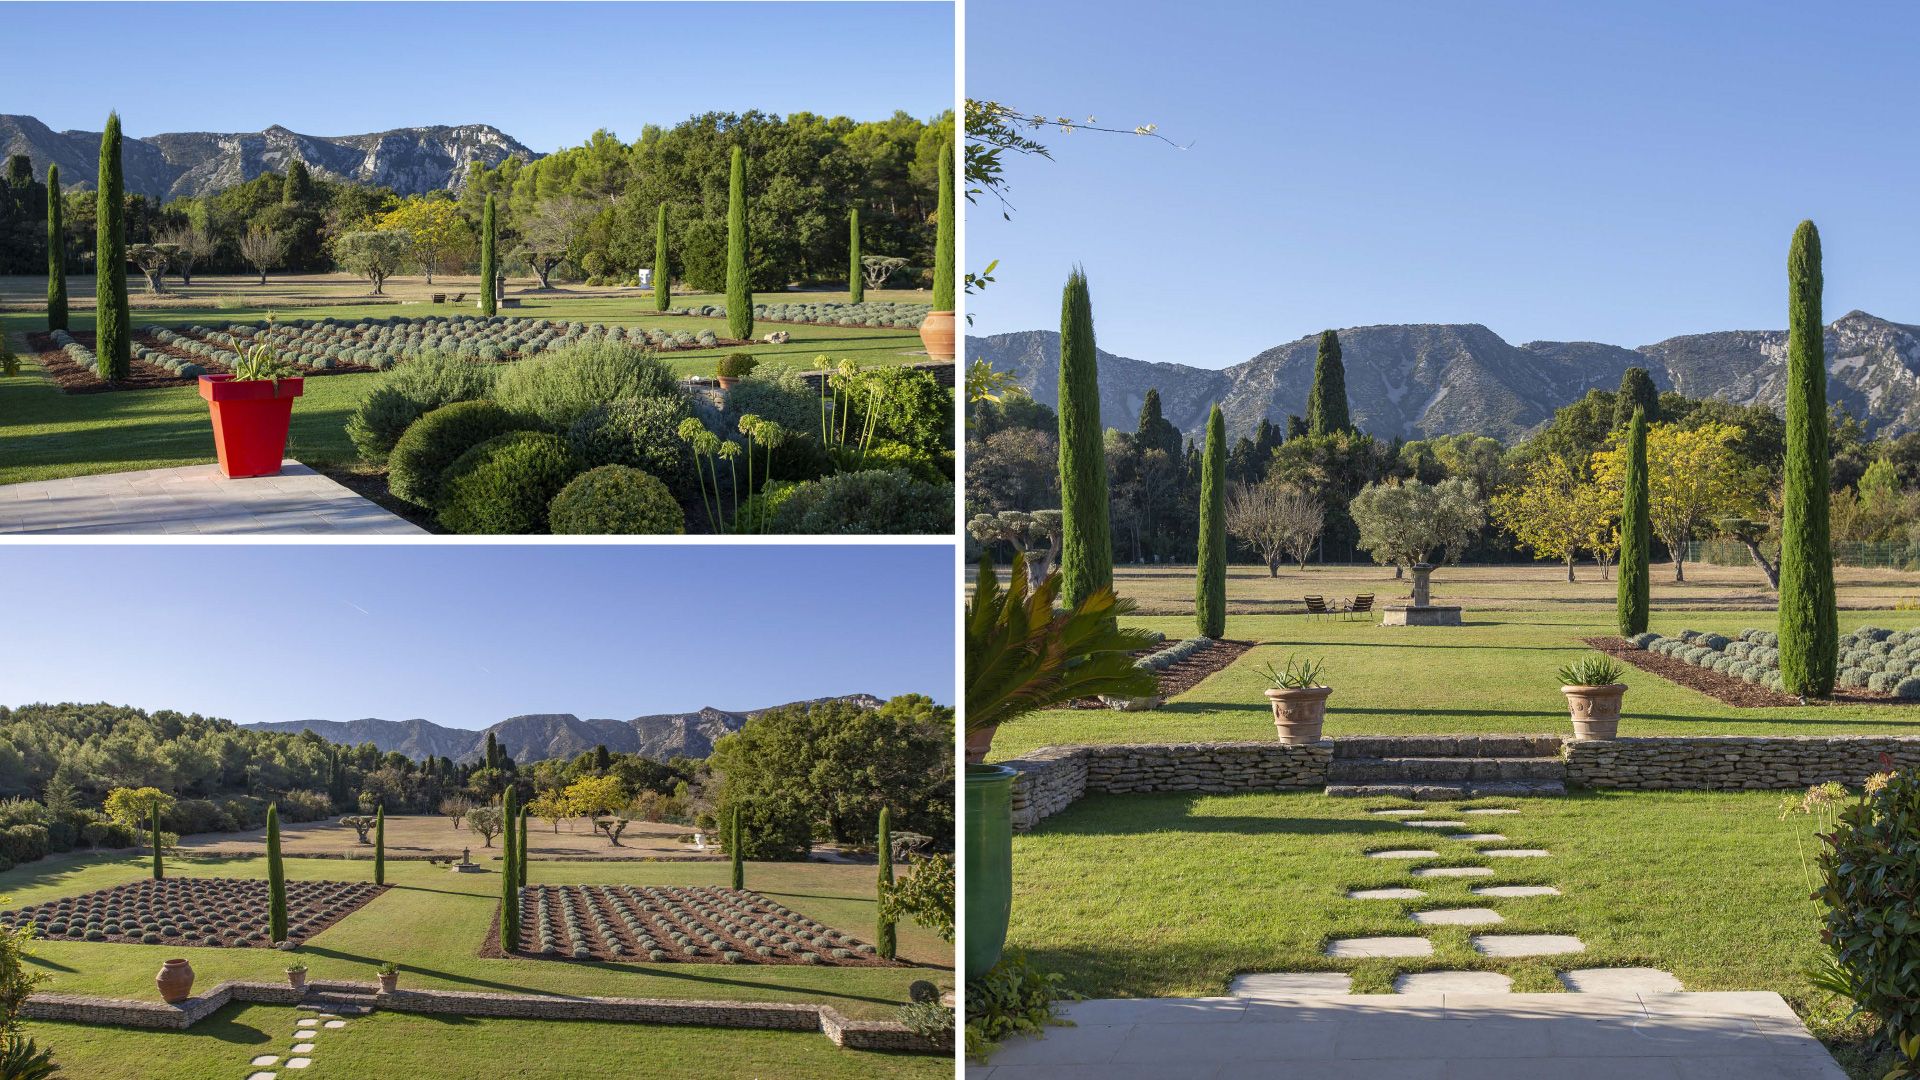 Mieten Sie eine außergewöhnliche Immobilie für Ihren Aufenthalt in der Provence